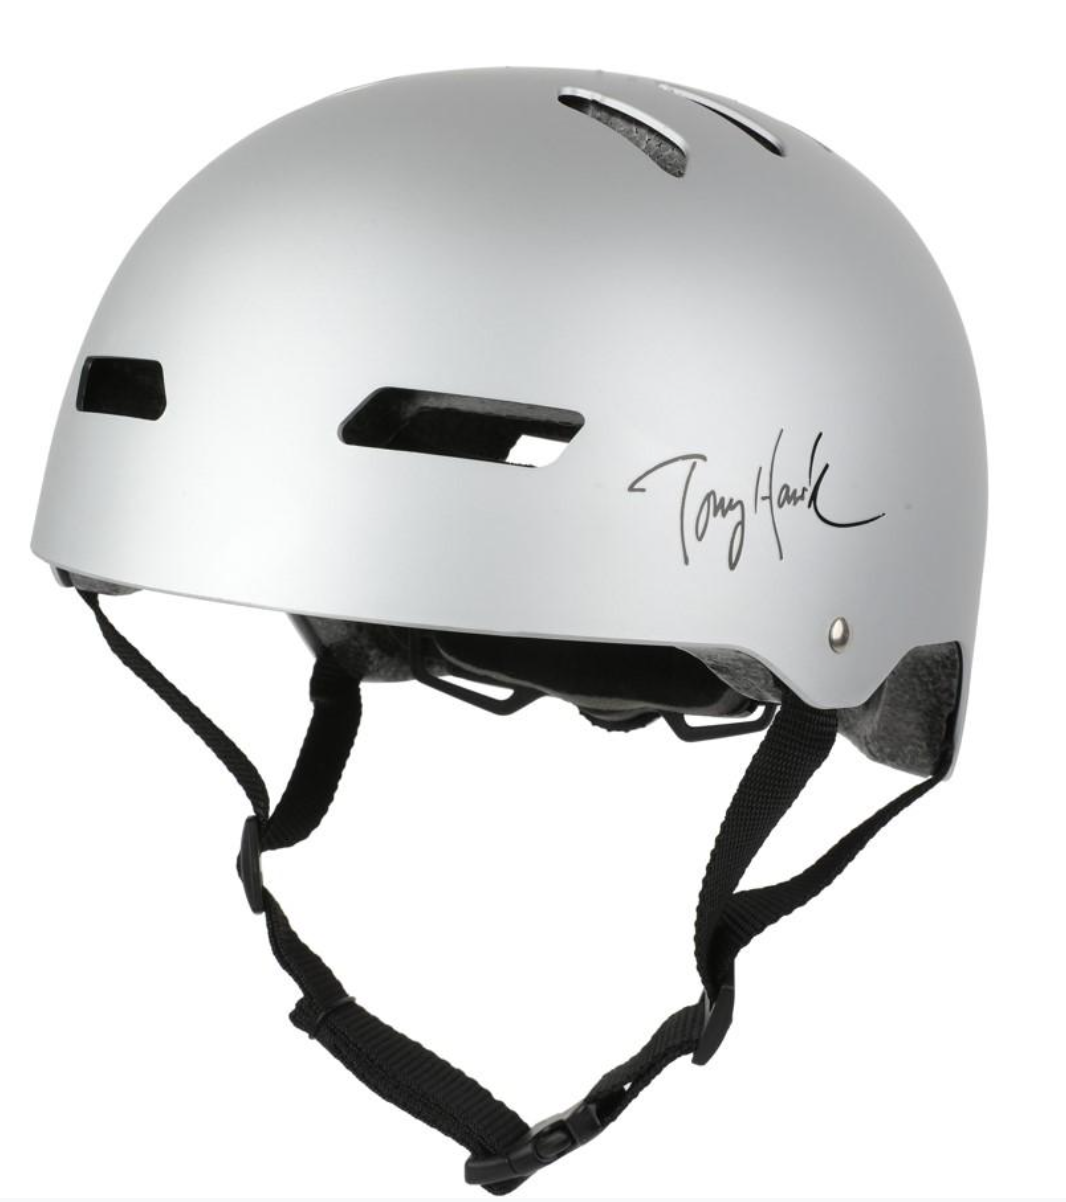 Tony Hawk Silver Helmets